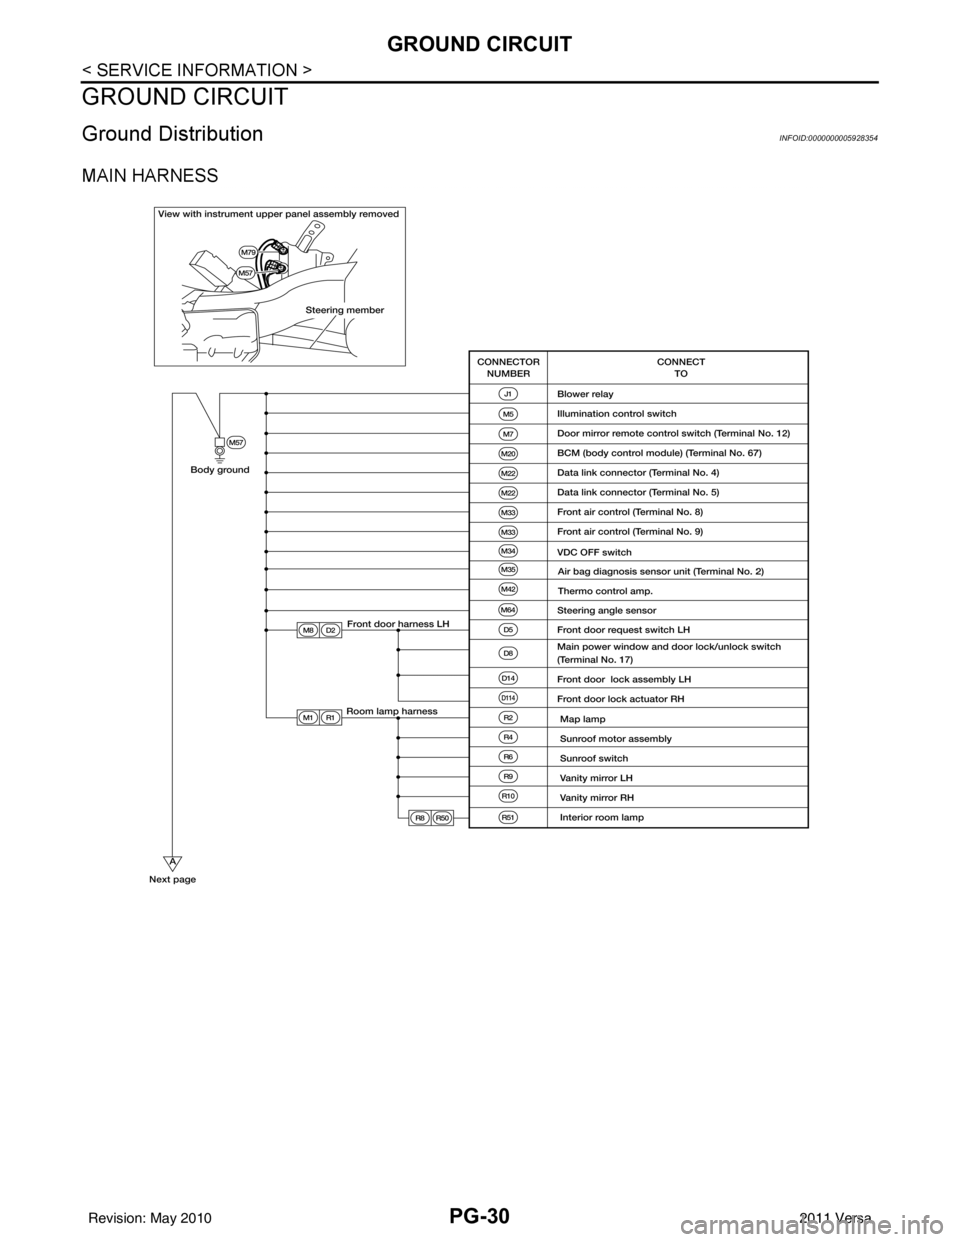 NISSAN LATIO 2011  Service Repair Manual PG-30
< SERVICE INFORMATION >
GROUND CIRCUIT
GROUND CIRCUIT
Ground DistributionINFOID:0000000005928354
MAIN HARNESS
Revision: May 20102011 Versa 